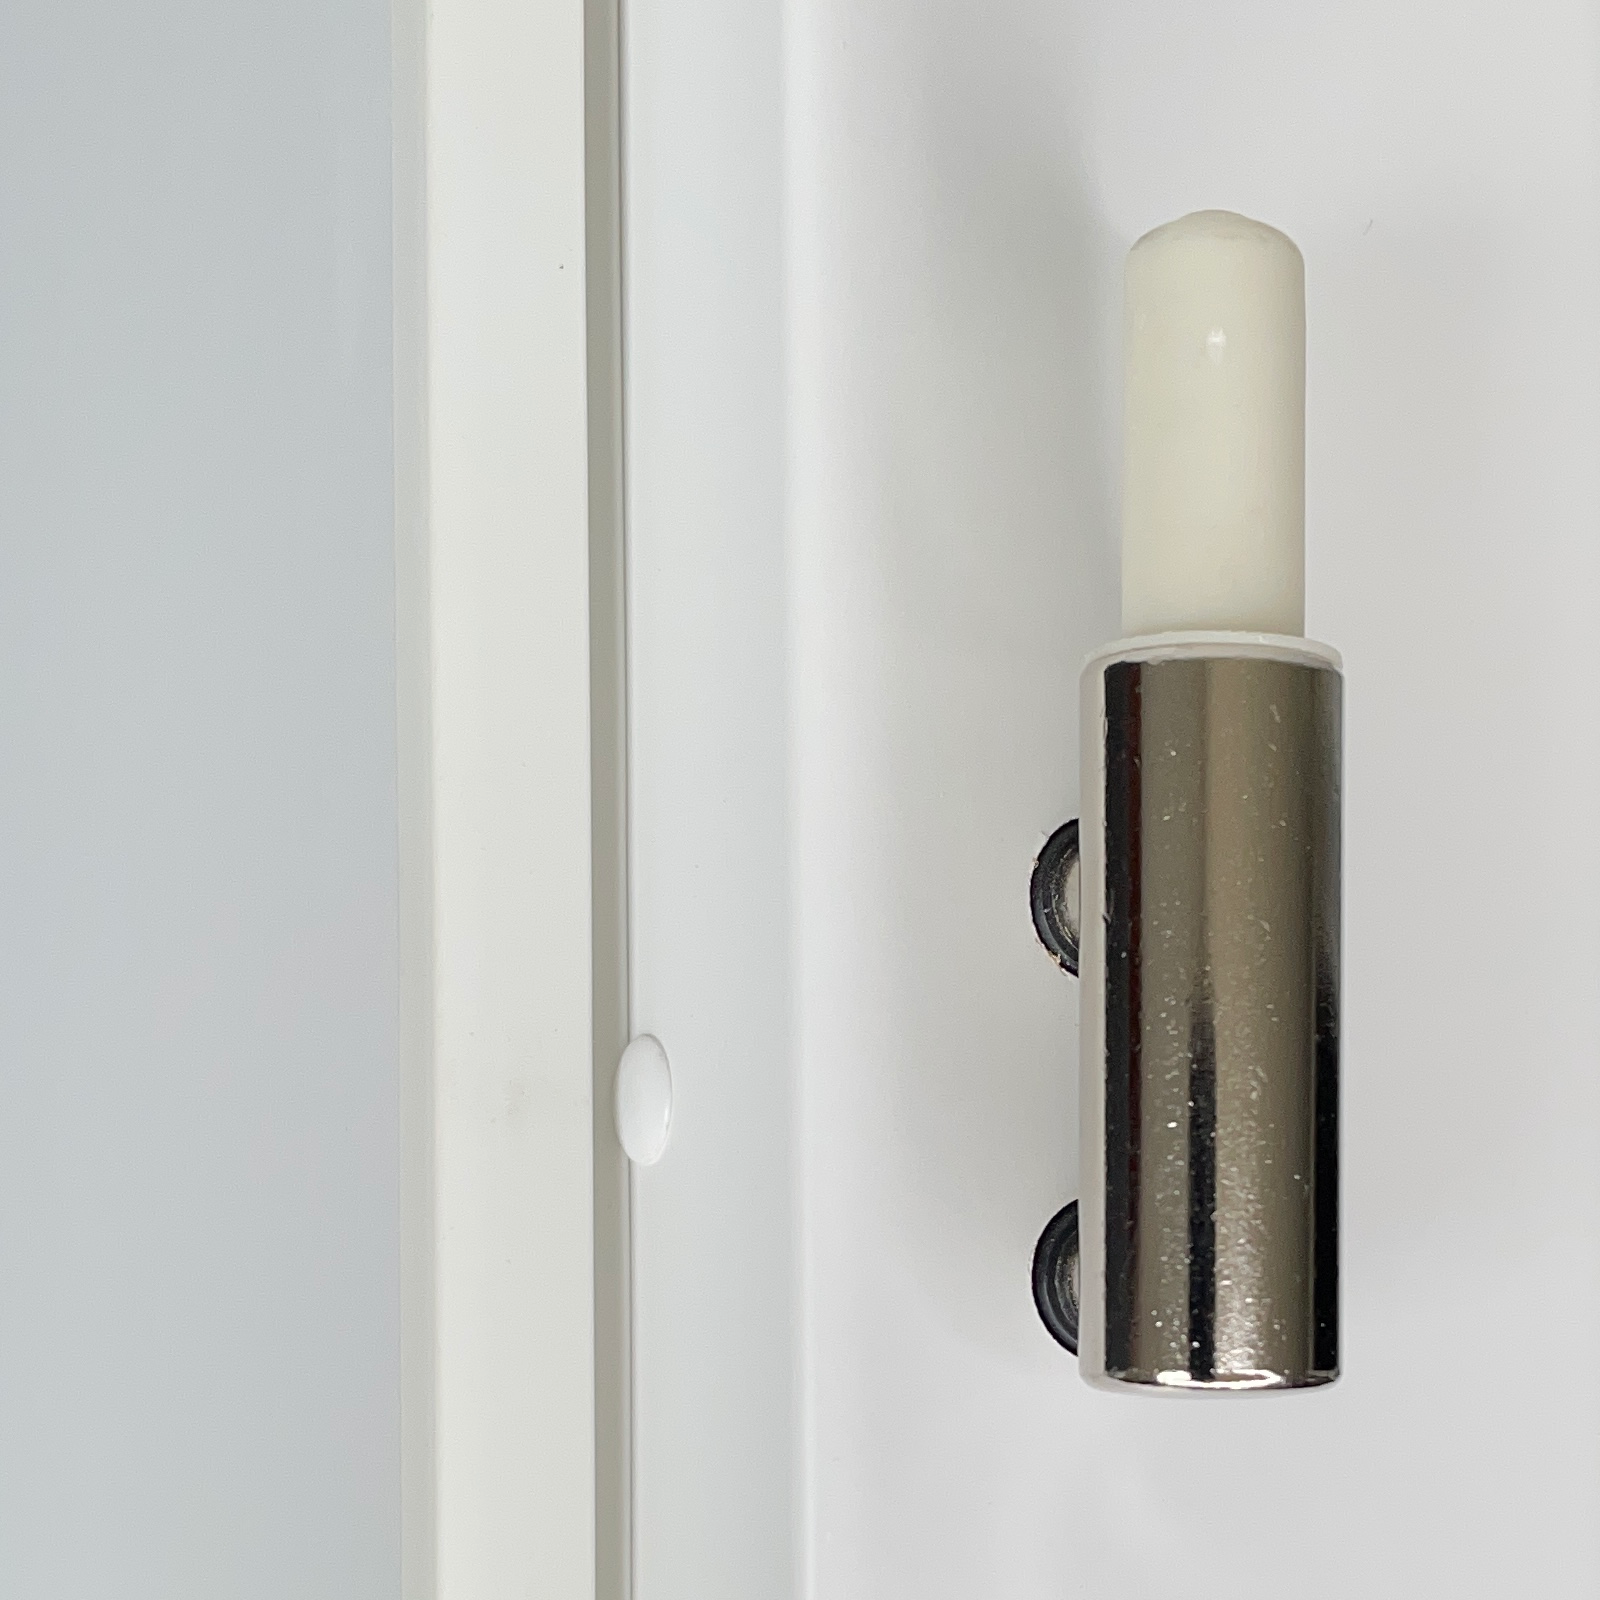 Zimmertür mit Zarge CPL glatt brillant-weiß Röhrenspan Designkante